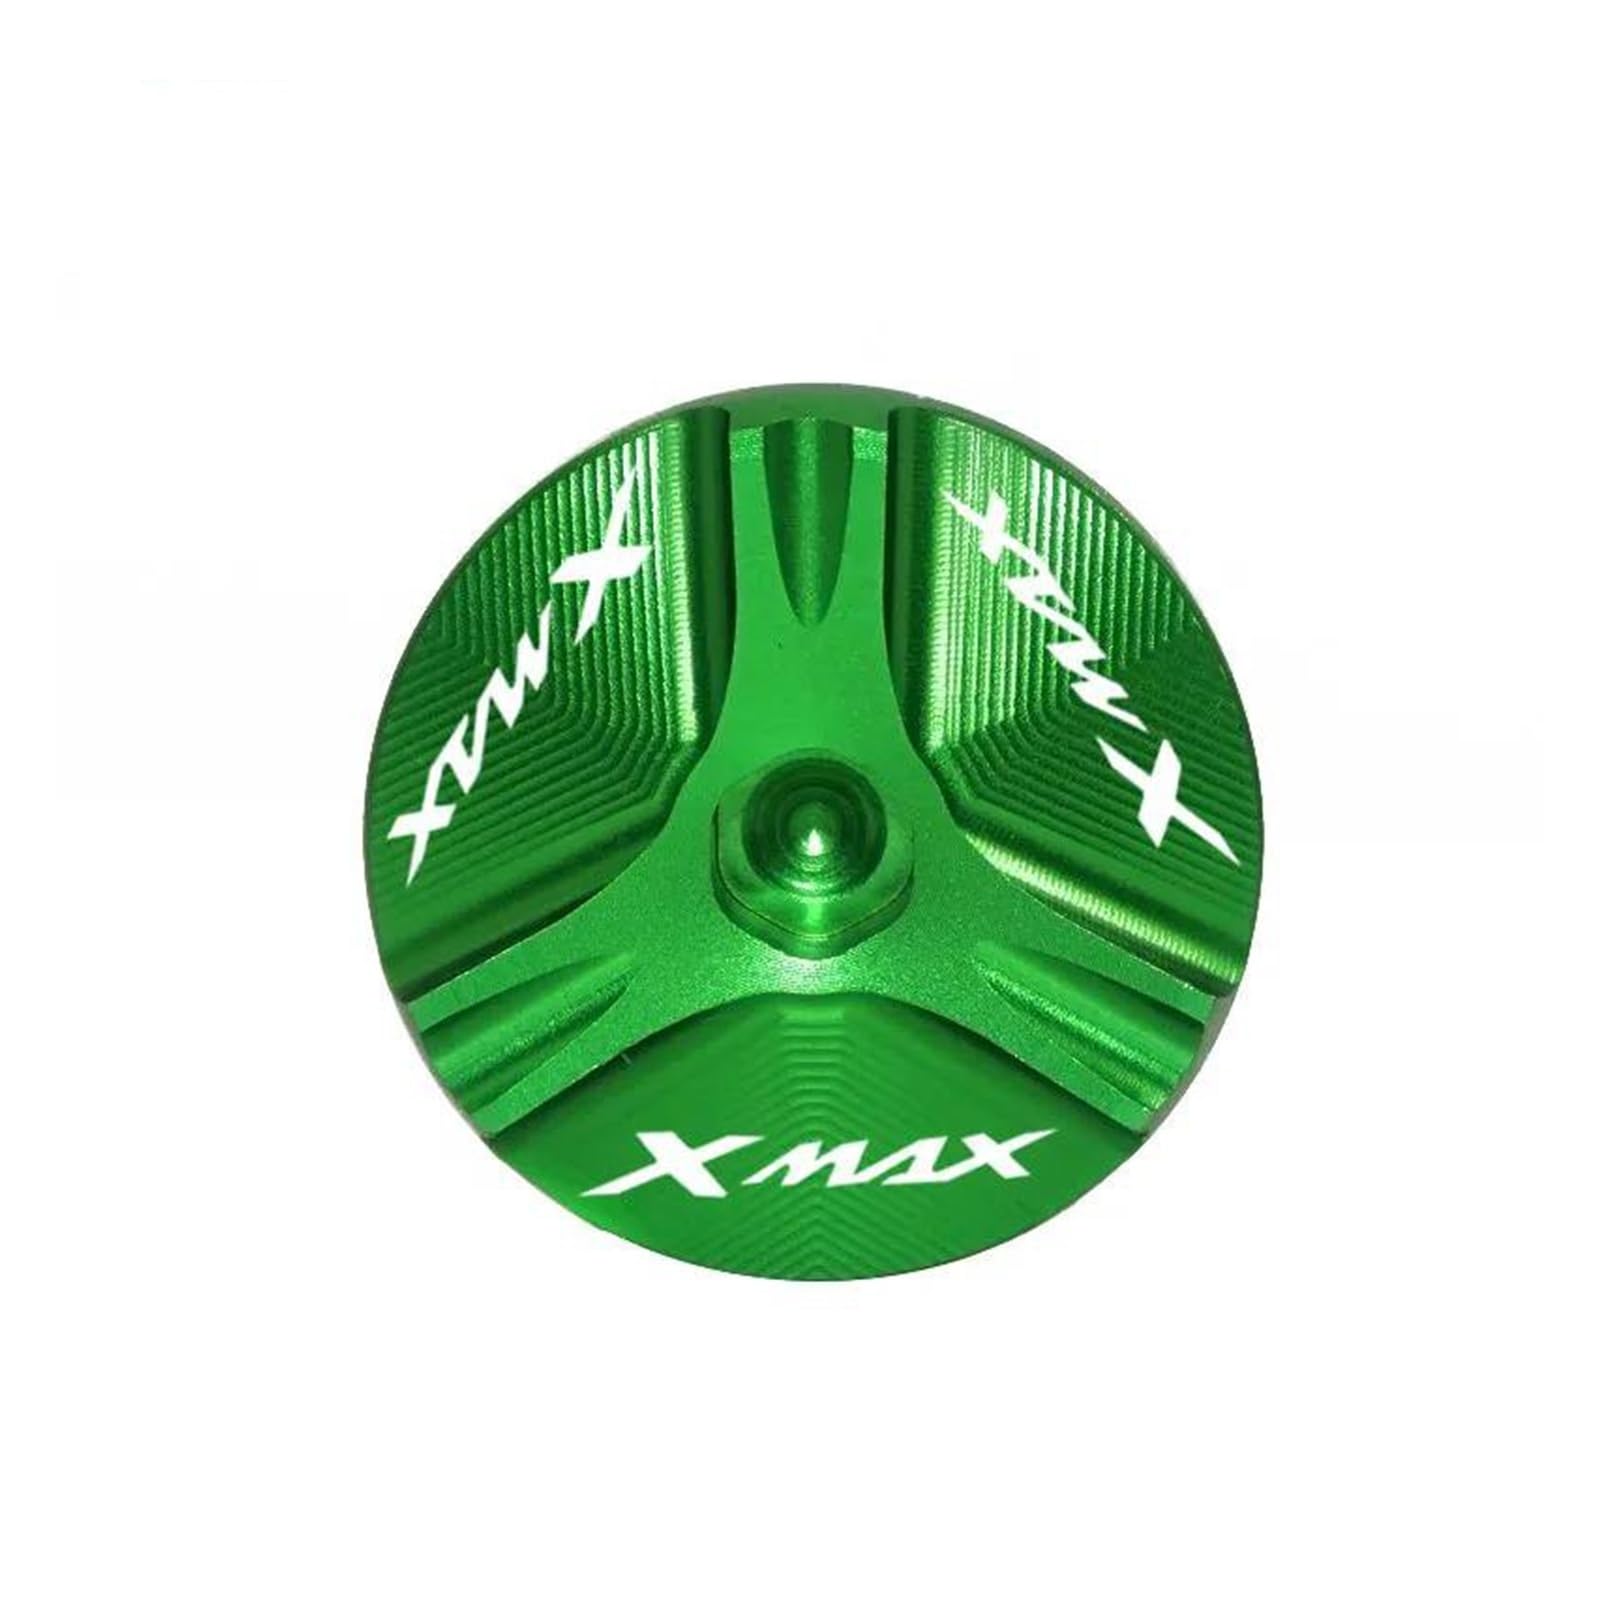 Für LOGO "XMAX" Motorrad CNC Aluminium Motor Öl Füllstoff Kappe Stecker Schraube Abdeckung Für Yamaha Für XMAX 300 Für X-MAX 250 Tankstecker (Farbe : Grün) von WilsEm